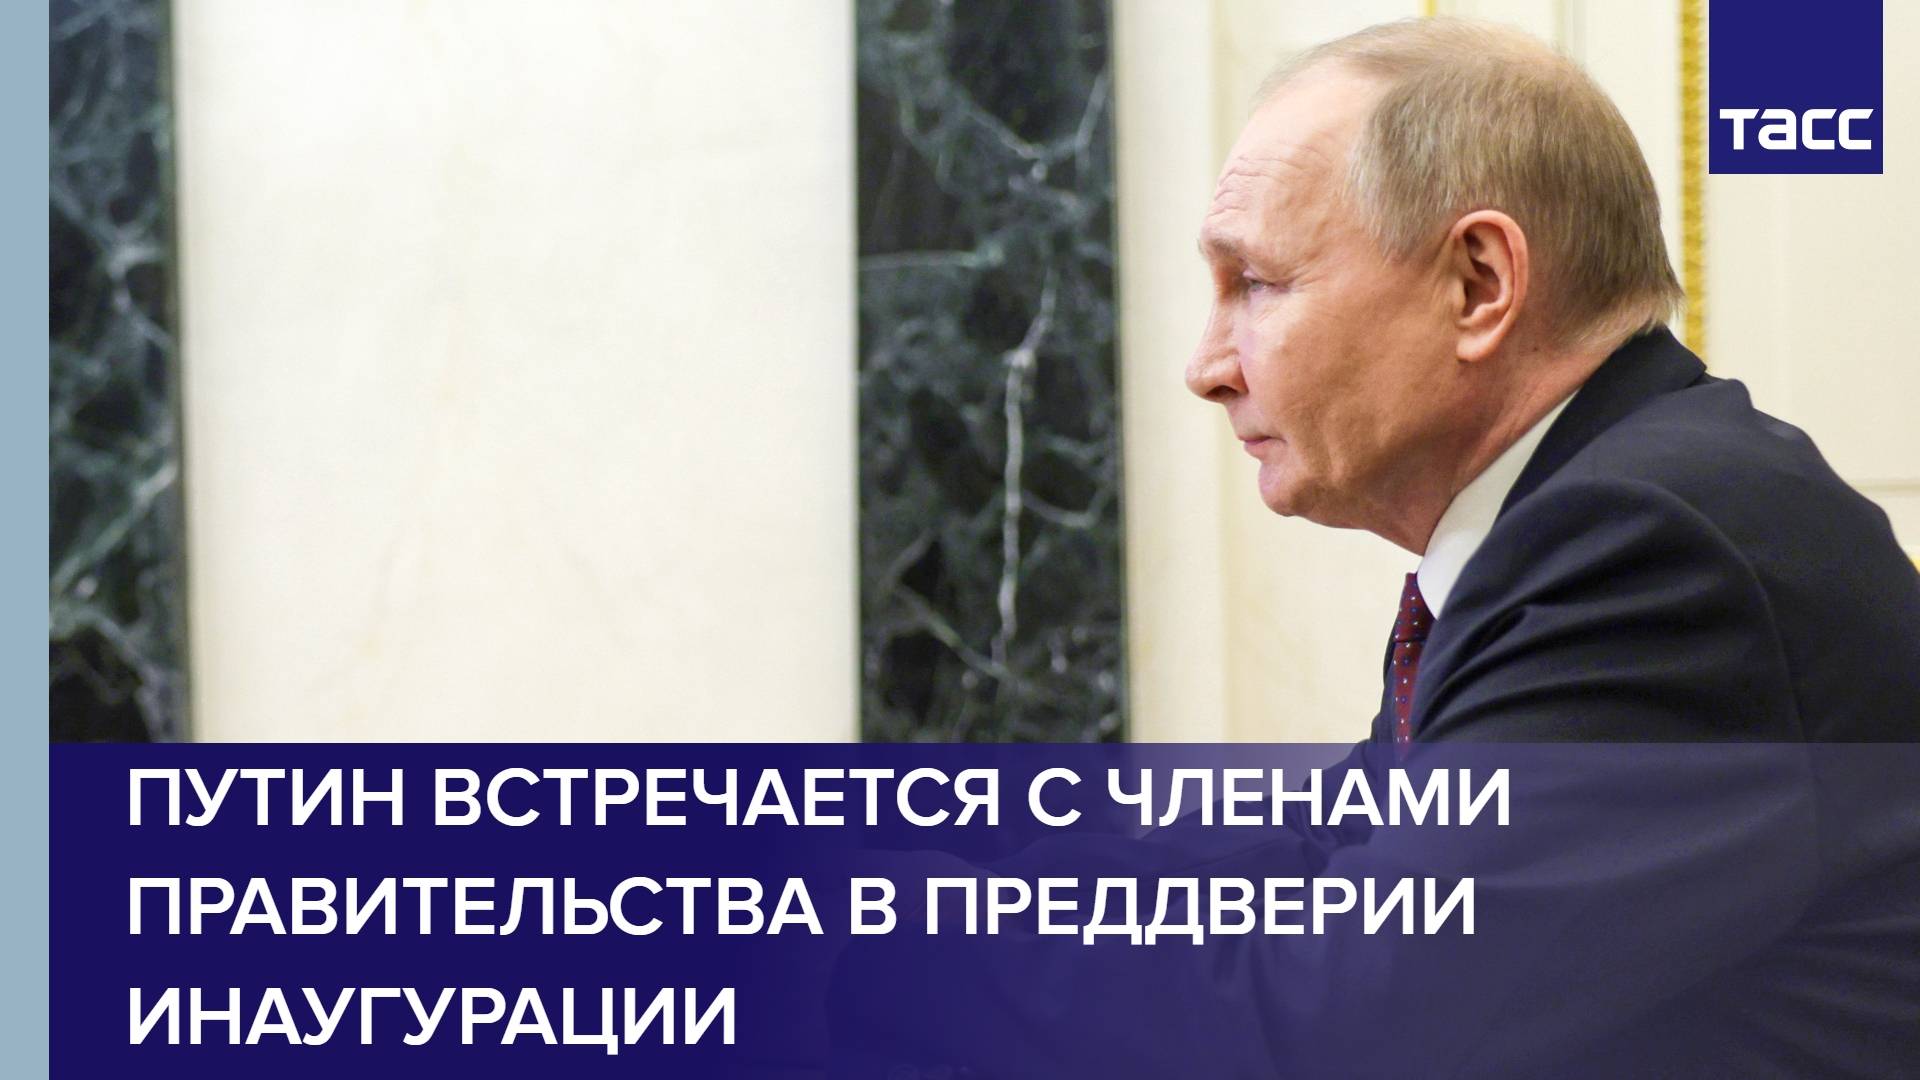 Путин встречается с членами правительства в преддверии инаугурации